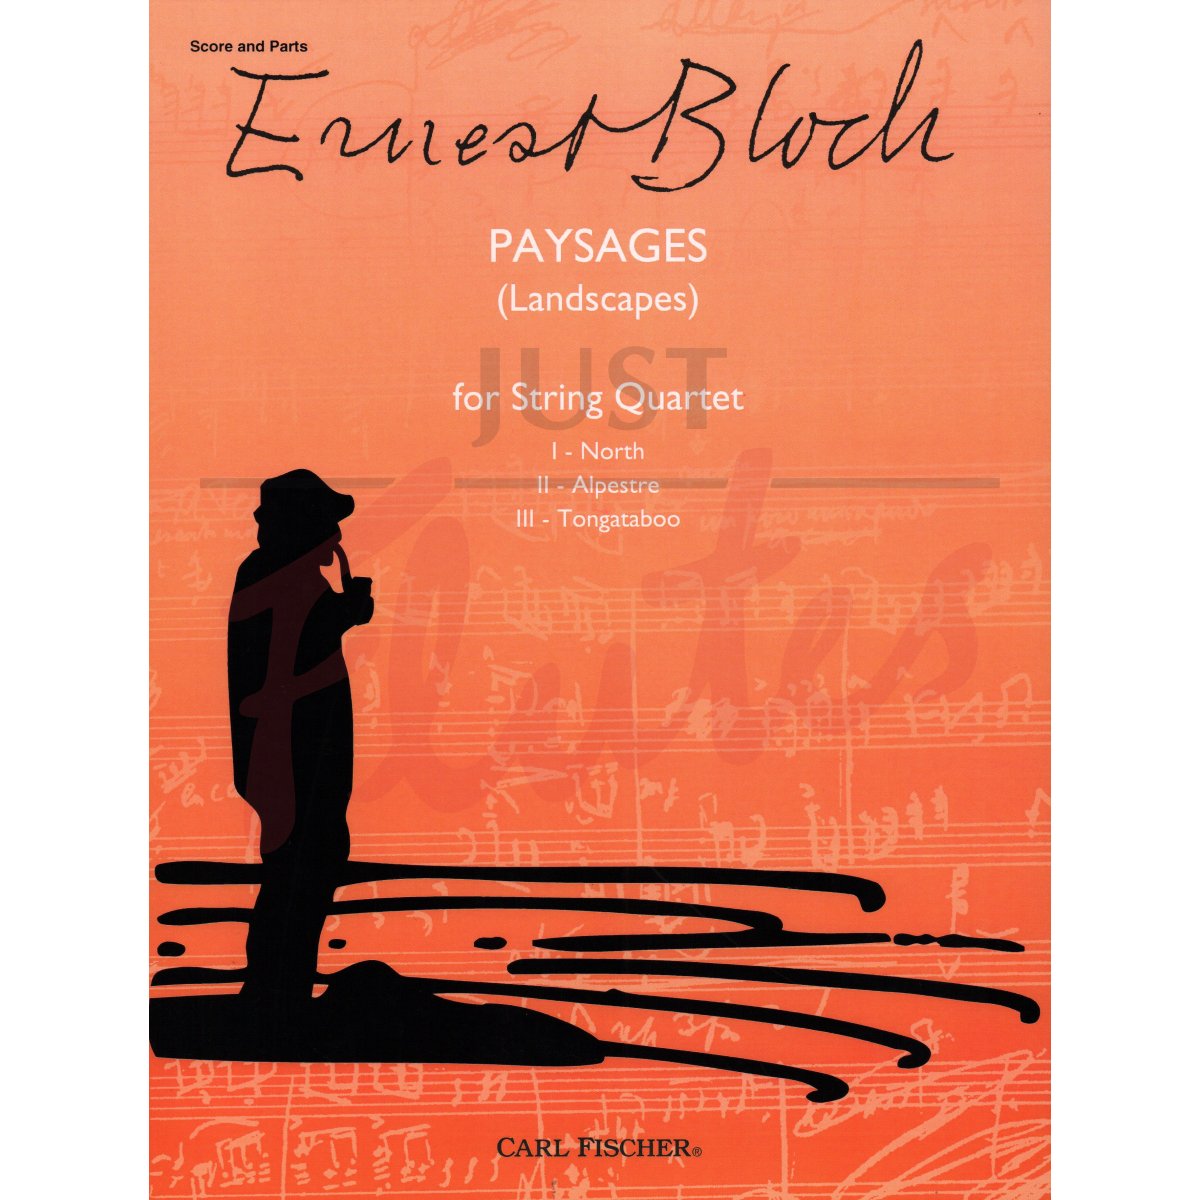 Paysages (Landscapes) for String Quartet